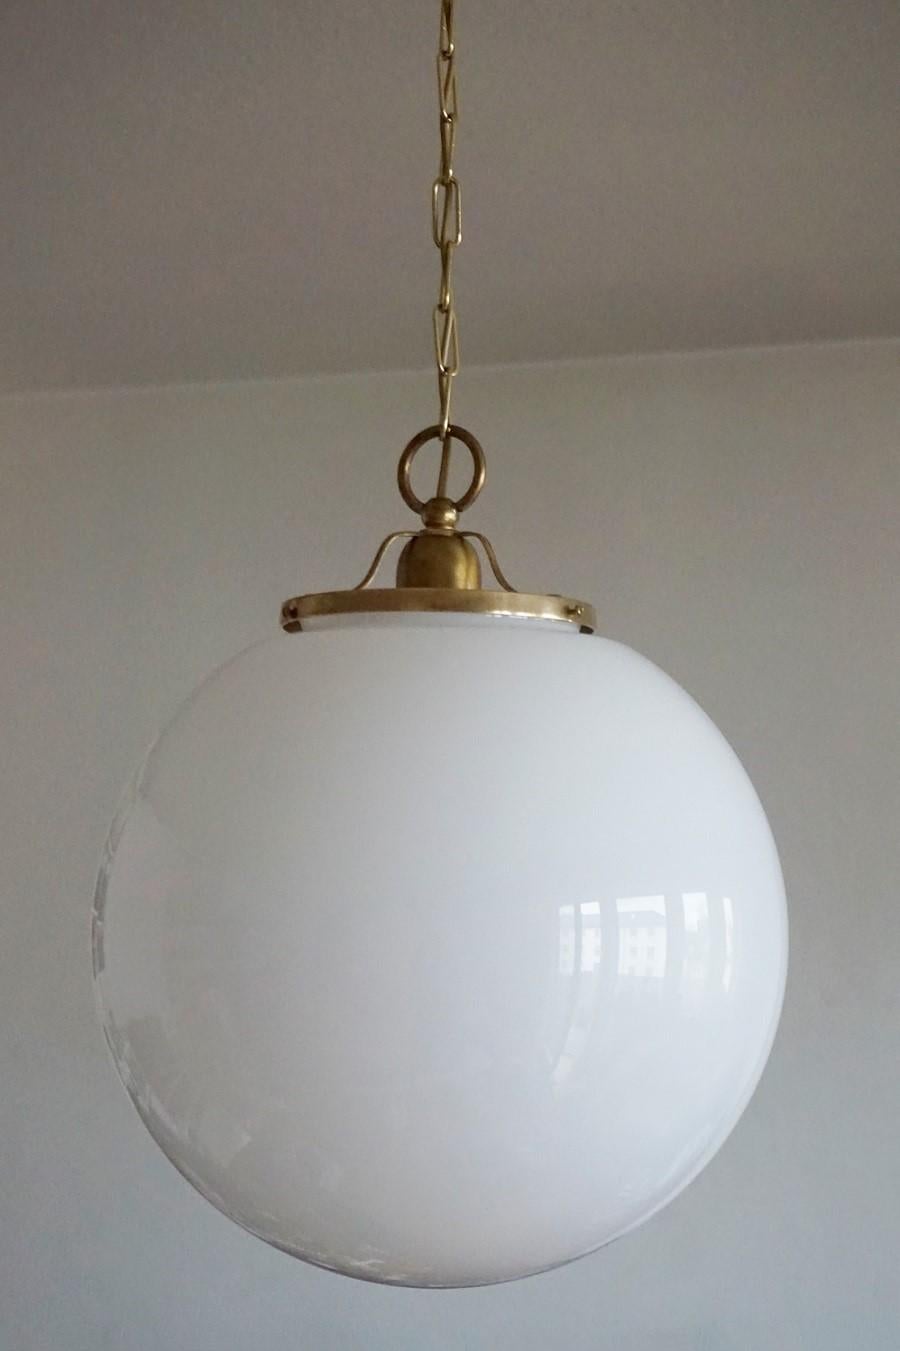 Grandes boules pendantes en verre opalin soufflé à la main, montées en laiton avec une seule douille E-27 pour une ampoule de grande taille, Italie. 1950s.
Mesures : Diamètre 14